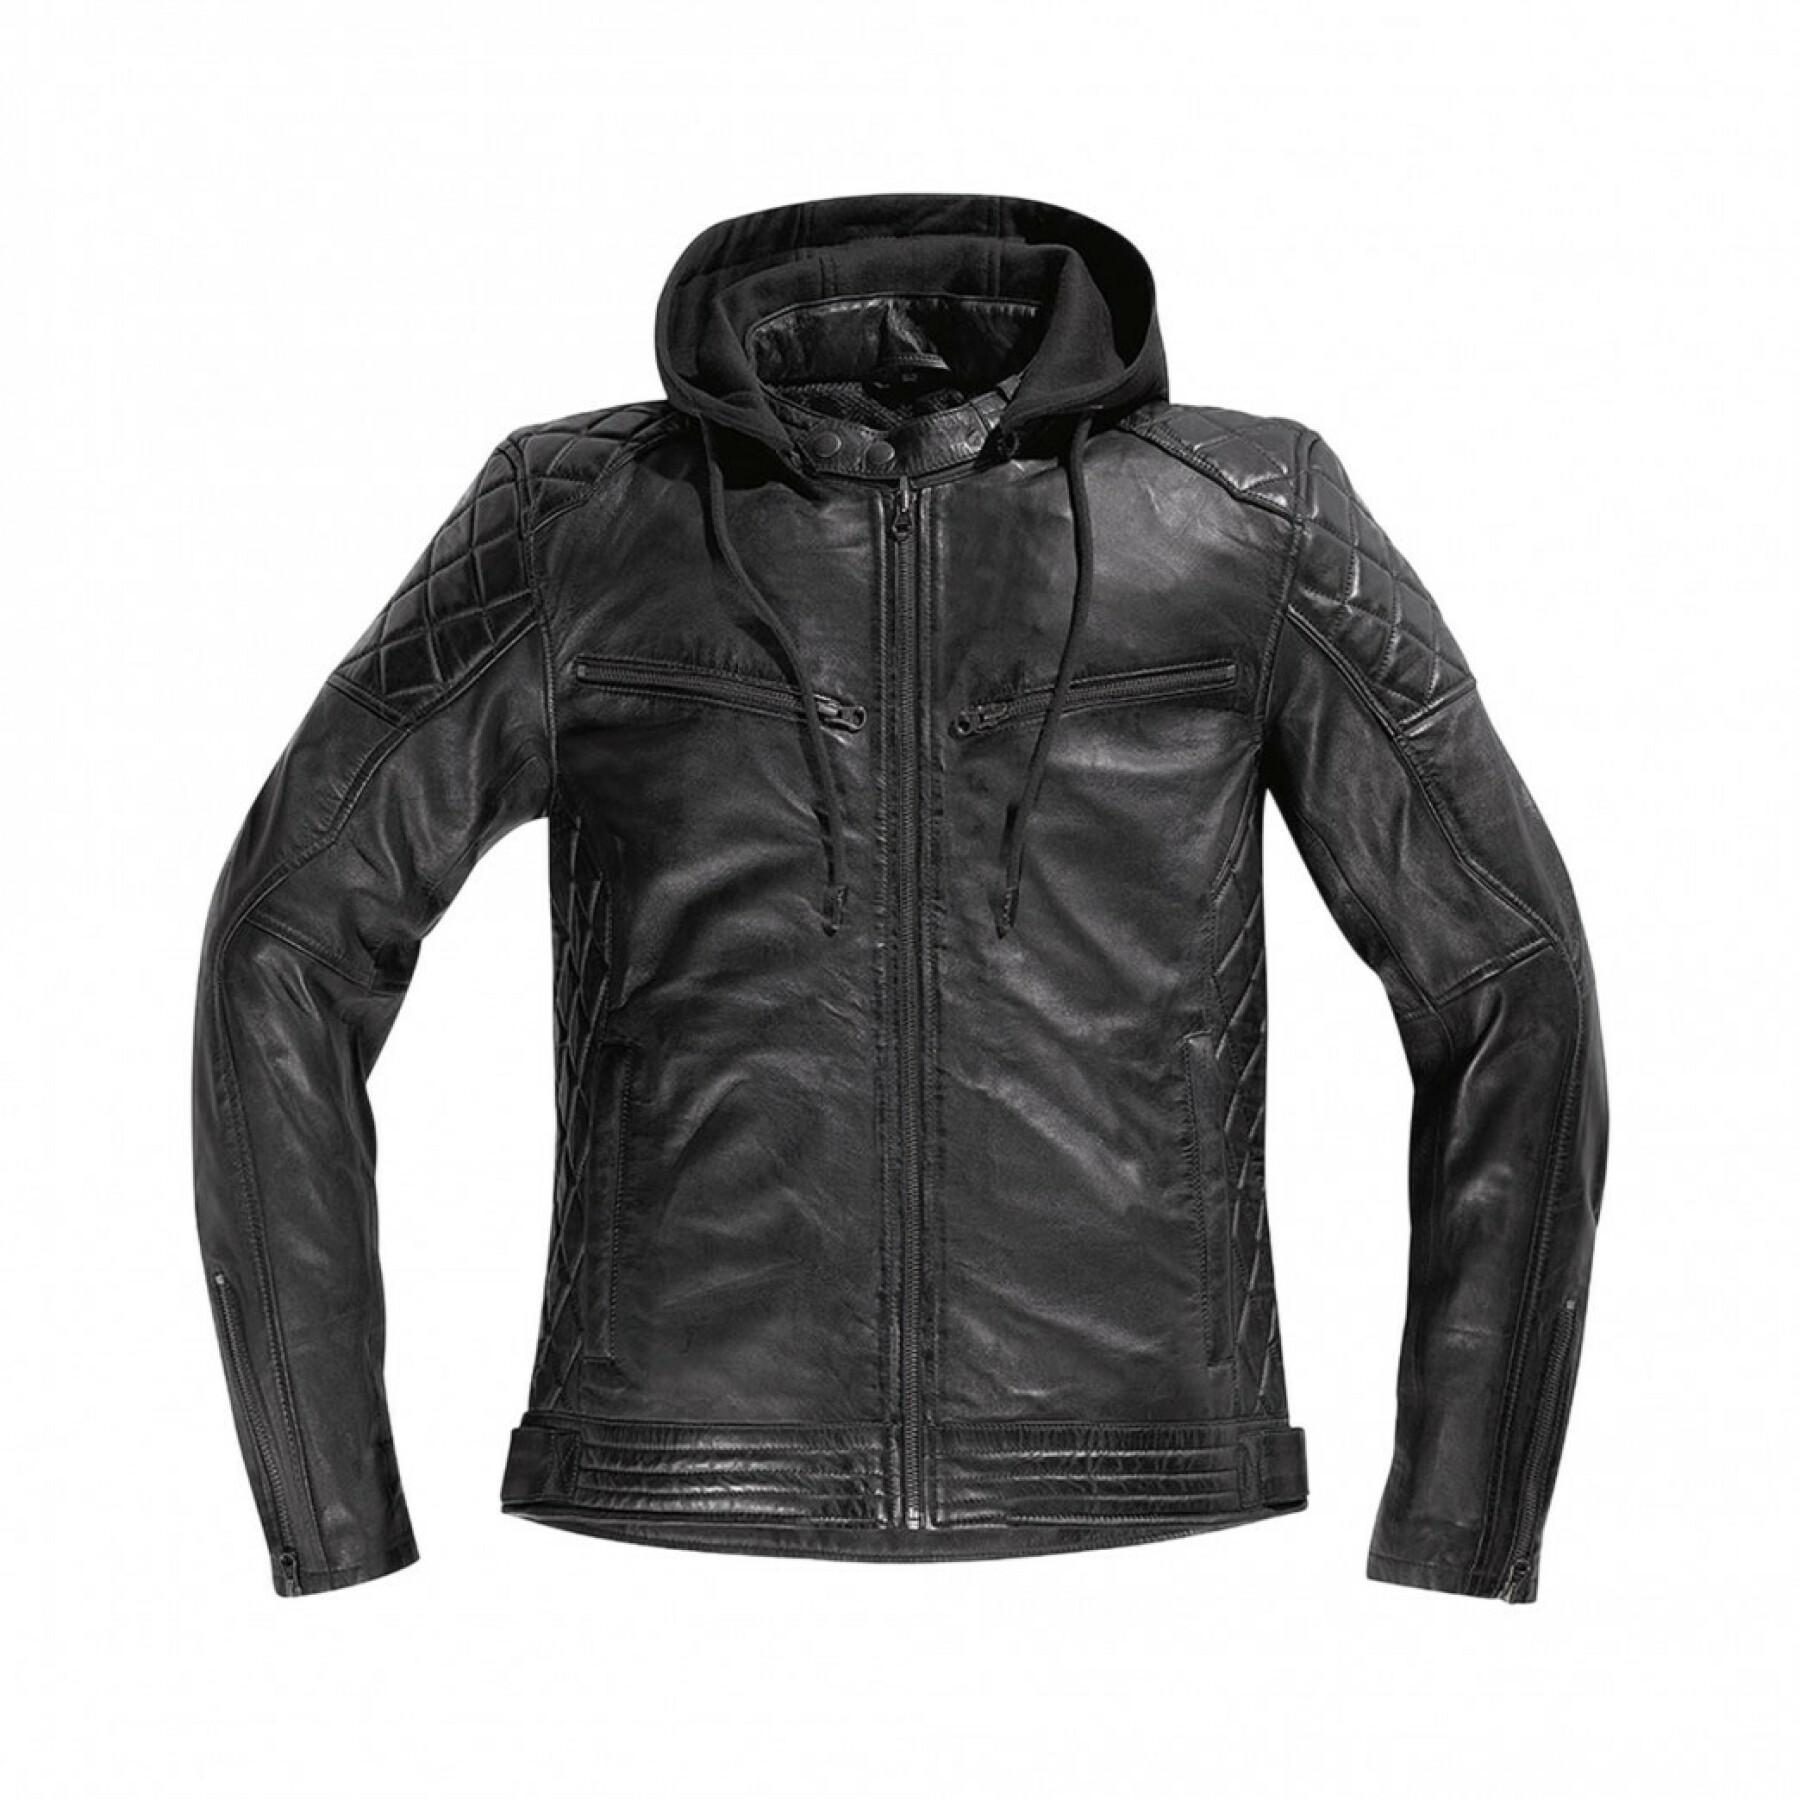 Motorcycle leather jacket Difi Détroit